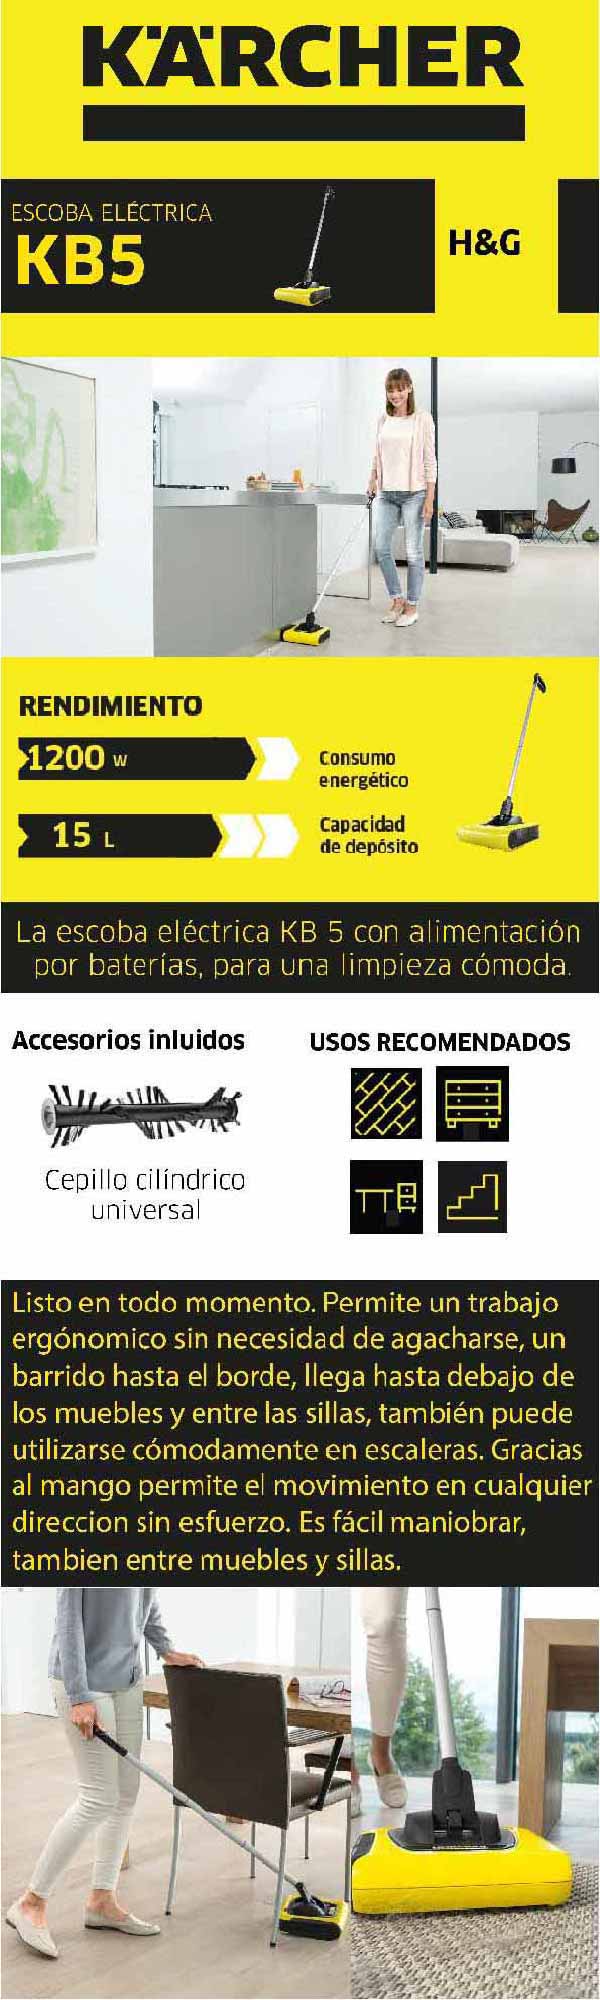 Escoba eléctrica KB 5 - KARCHER-HIDROLAVADORAS-PROVEEDORA DE HERRAMIENTAS  TEXCOCO